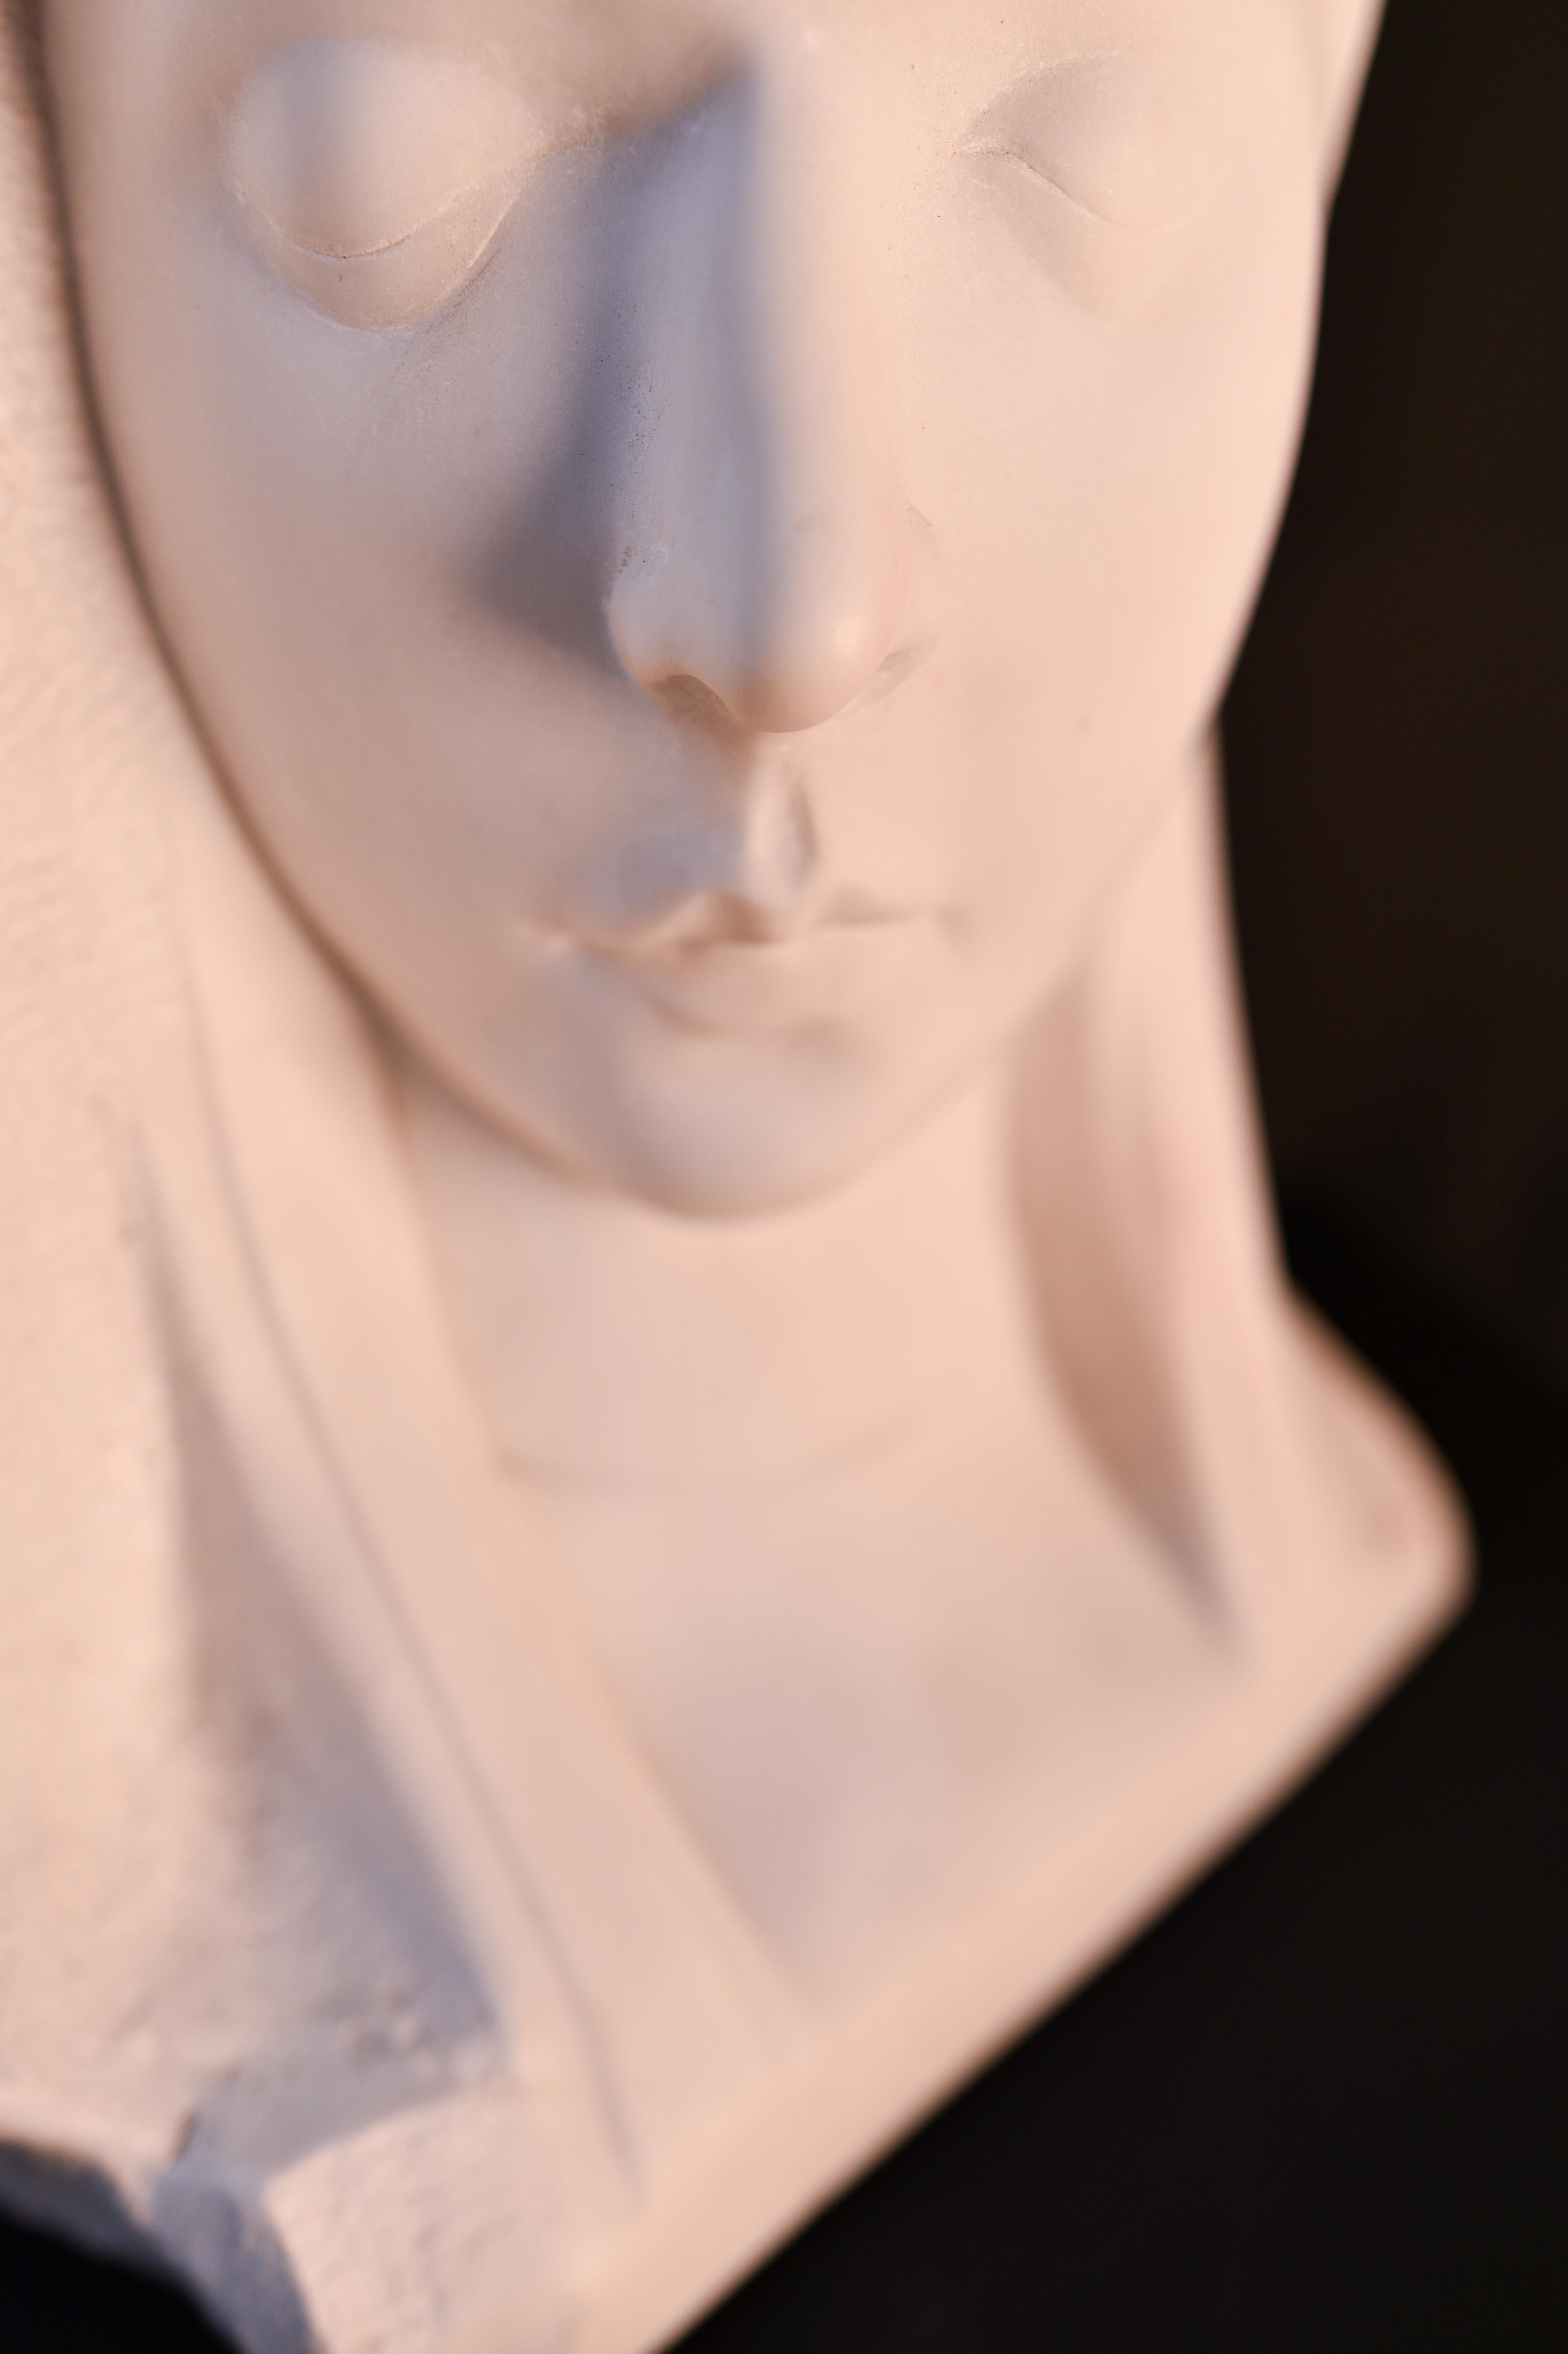 Le buste représente une femme aux traits très sereins et doux, voire à l'aspect mystique. 

La pièce est signée, comme on peut le voir sur l'une des photos. 